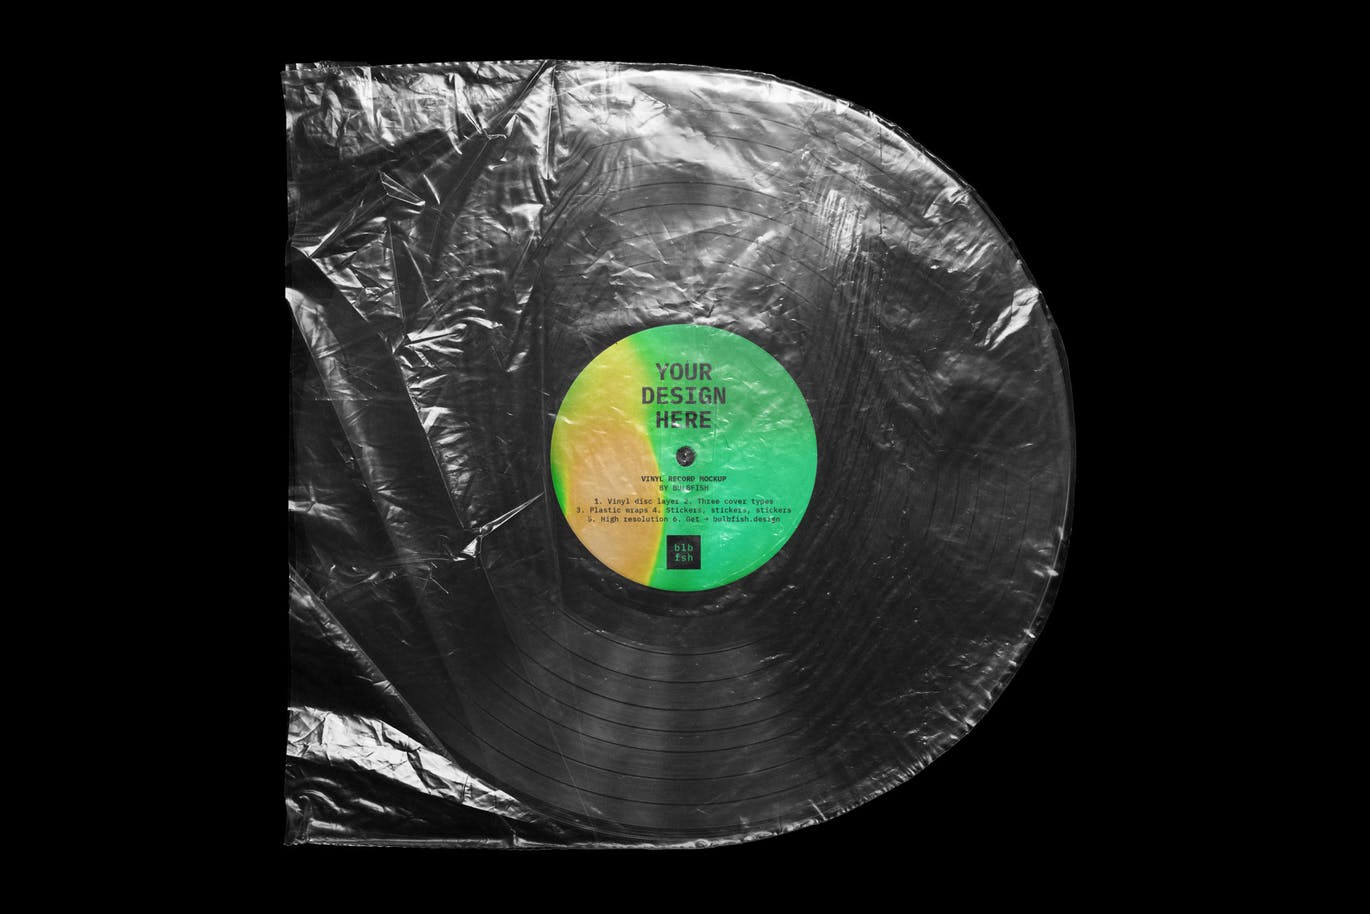 乙烯基唱片包装盒及封面设计图素材库精选模板 Vinyl Record Mockup插图(5)